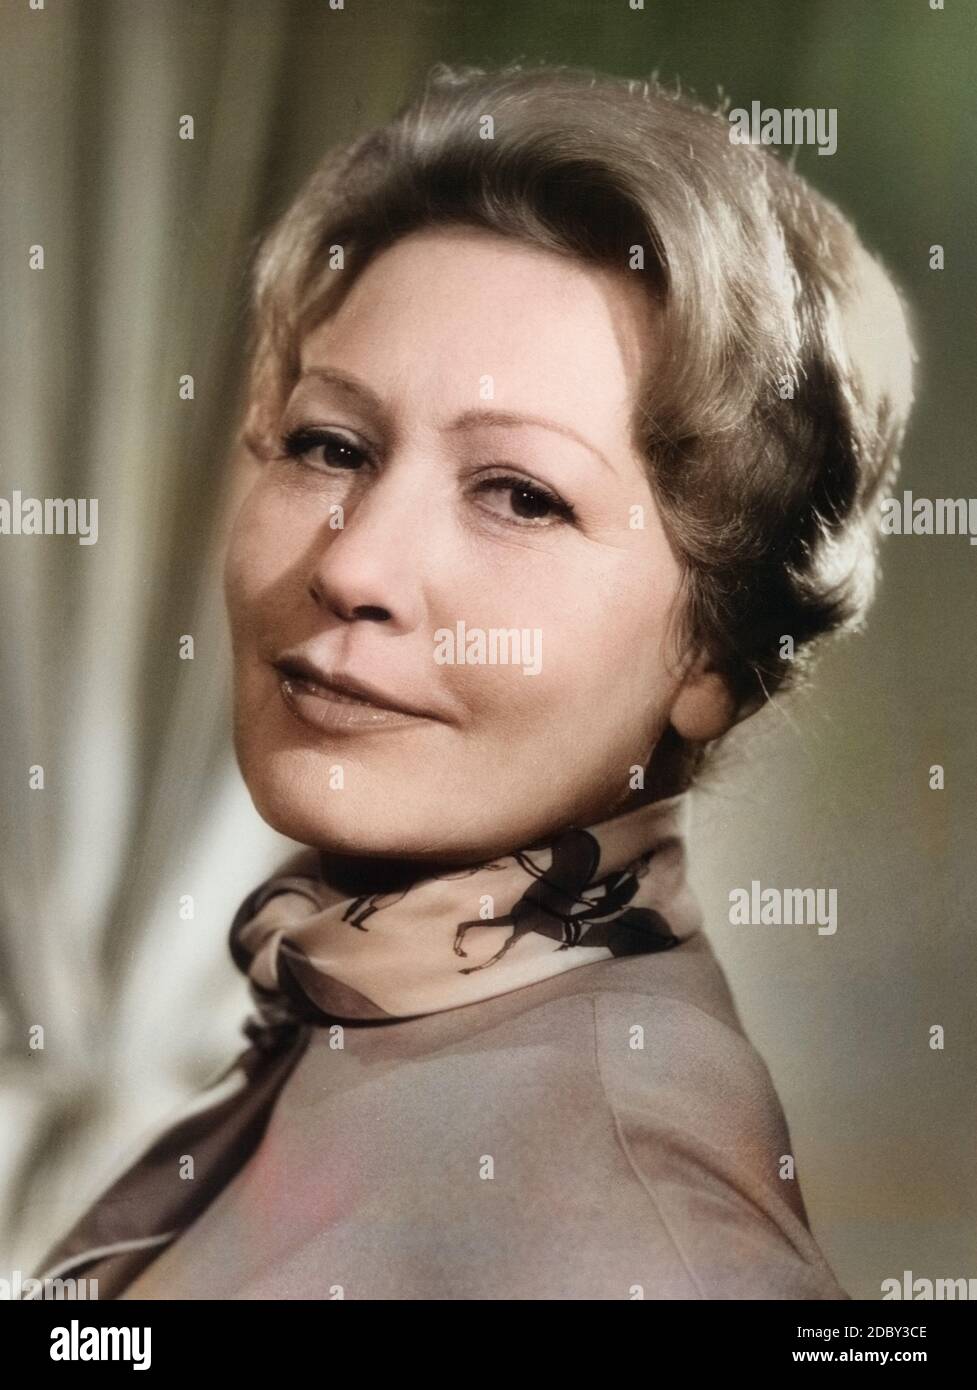 Heli Finkenzeller, deutsche Bühnen- und Filmschauspielerin, Deutschland 1950er Jahre. Deutsche Theater und Film Schauspielerin Heli Finkenzeller, Deutschland 1950. Stockfoto